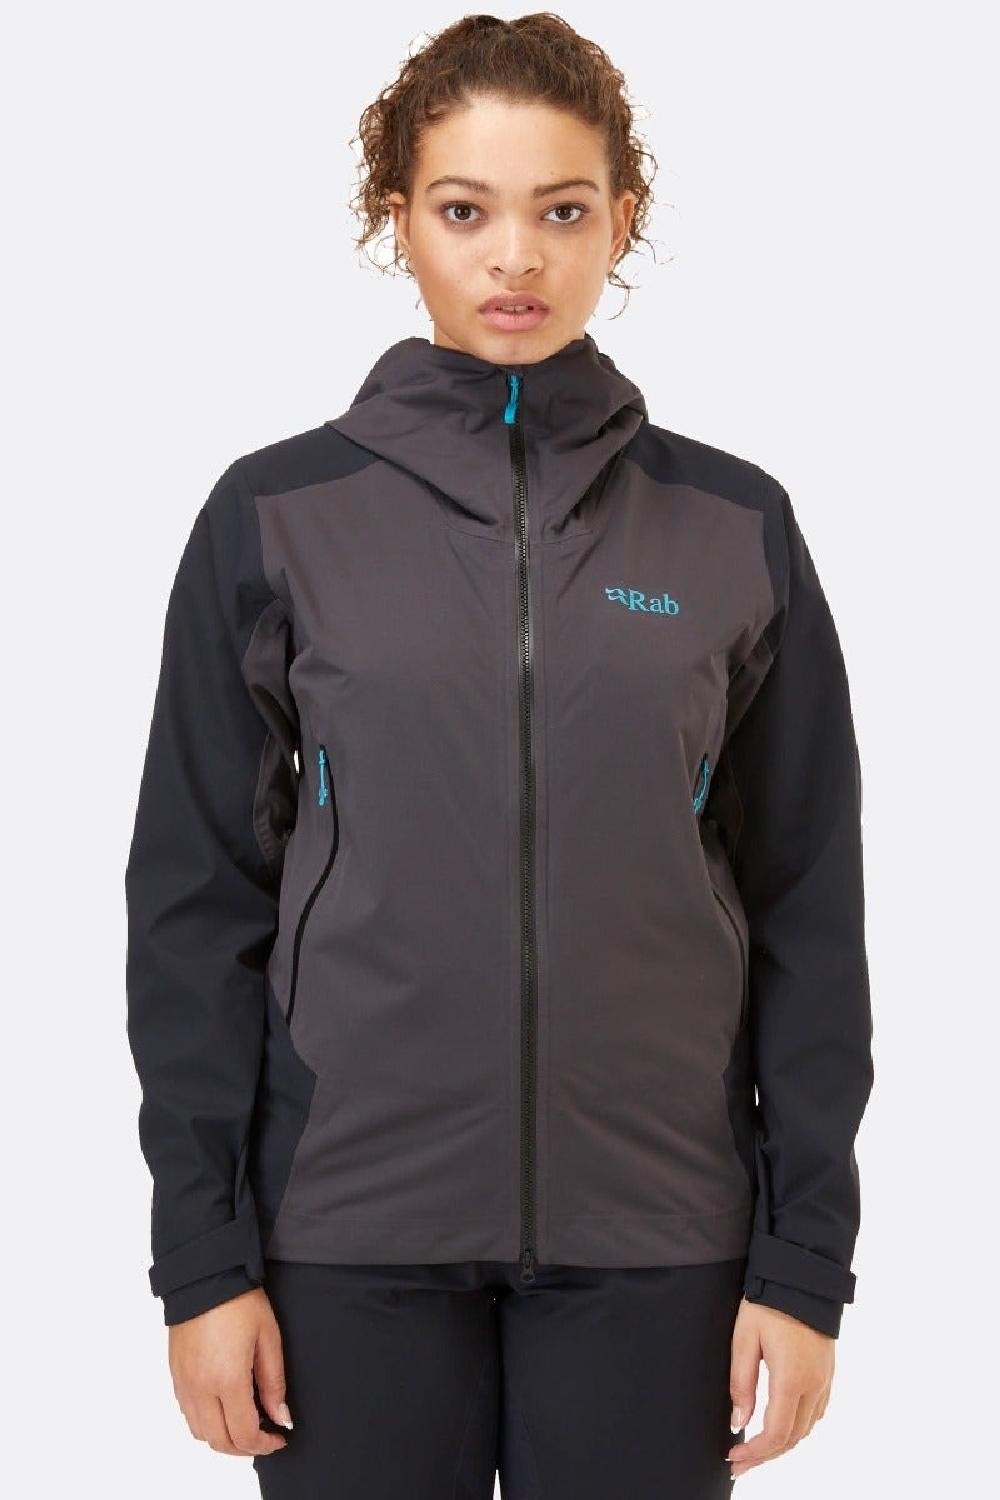 Куртка Kinetic Alpine 2.0 — женская Rab, черный